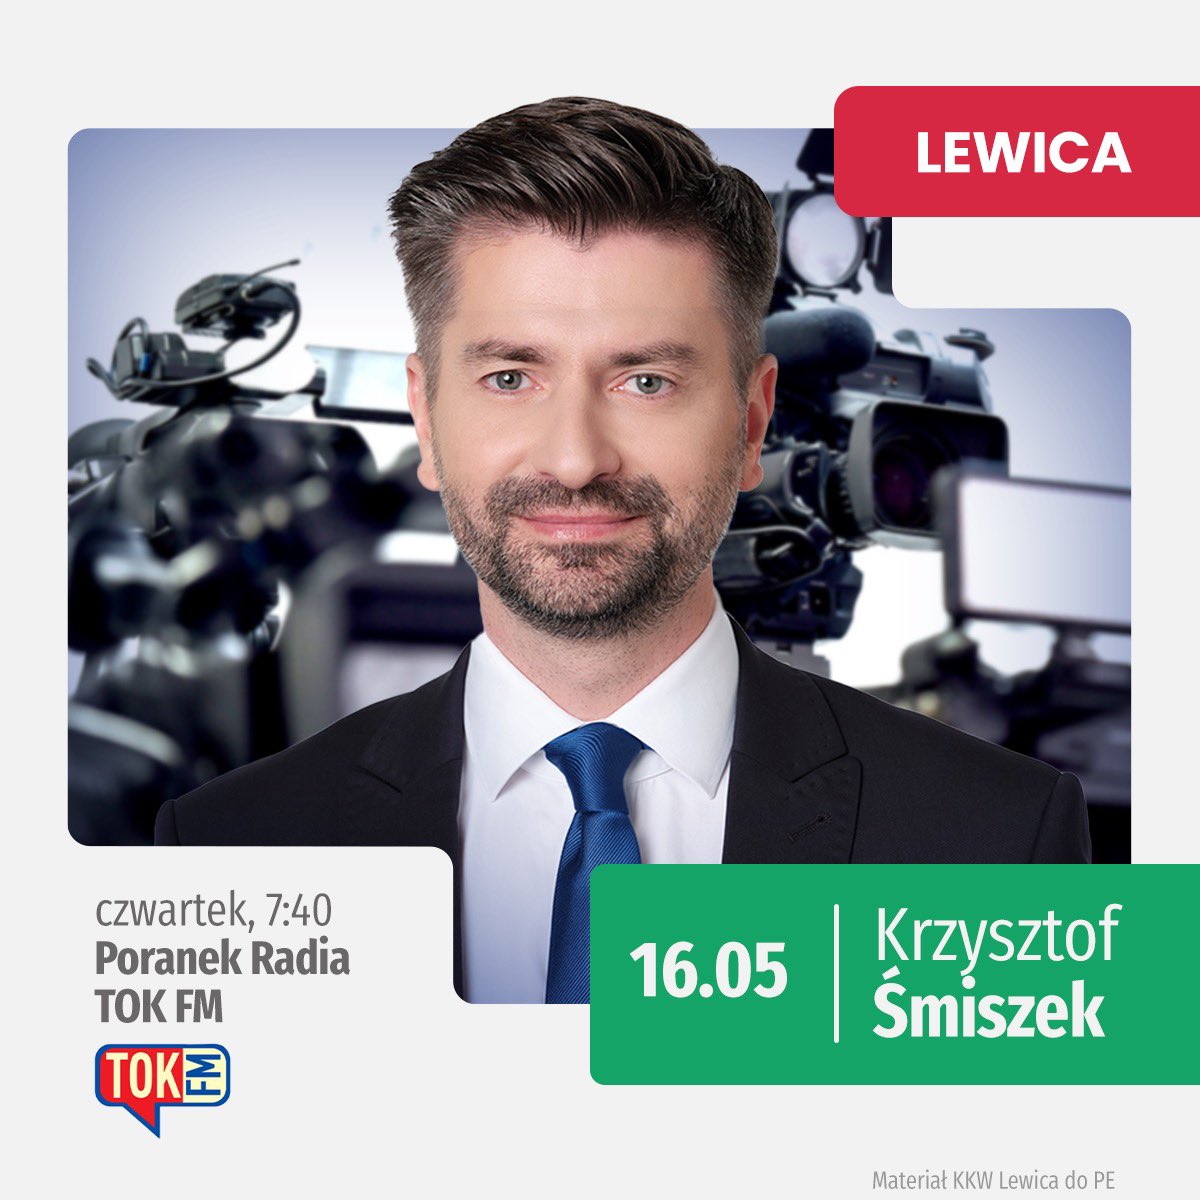 📻 Lider dolnośląsko-opolskiej listy do Parlamentu Europejskiego @K_Smiszek jutro o 7:40 będzie gościem audycji #PoranekTOKFM na antenie @Radio_TOK_FM Zachęcamy do słuchania! #EuropaDlaCiebie #LewicaWMediach